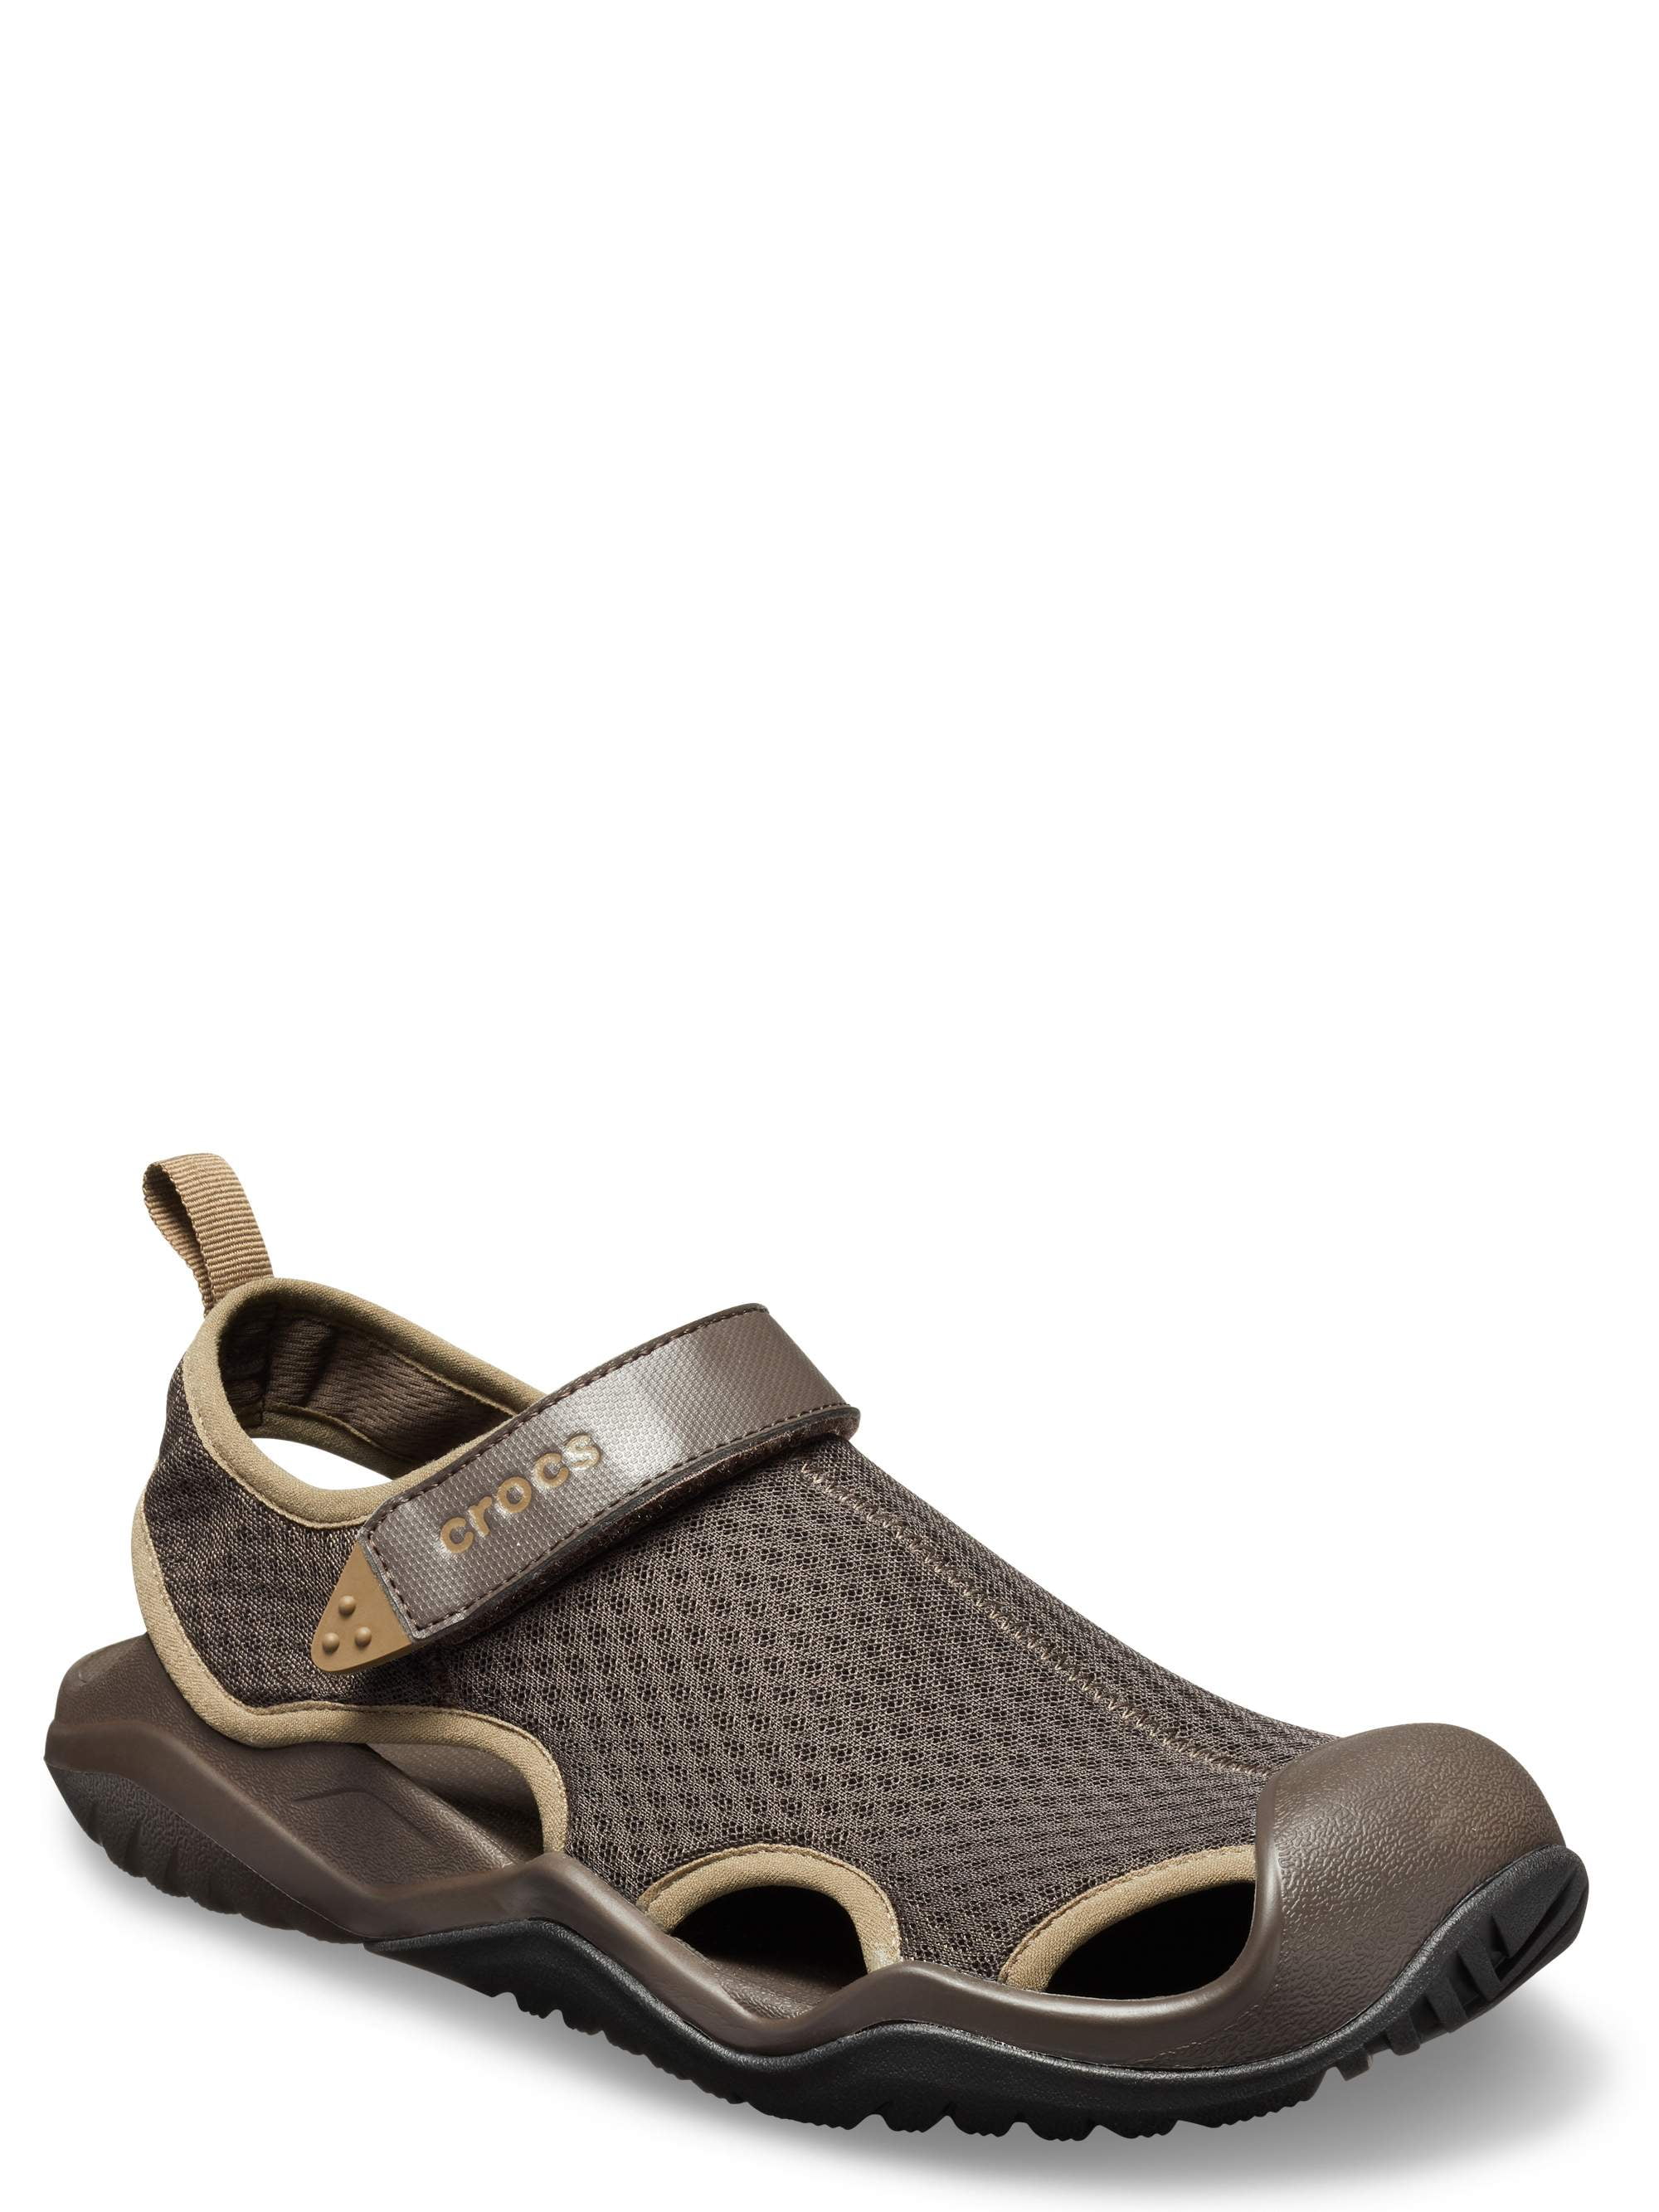 Crocs Men's Swiftwater Mesh Sandal Choose SZ/Color 